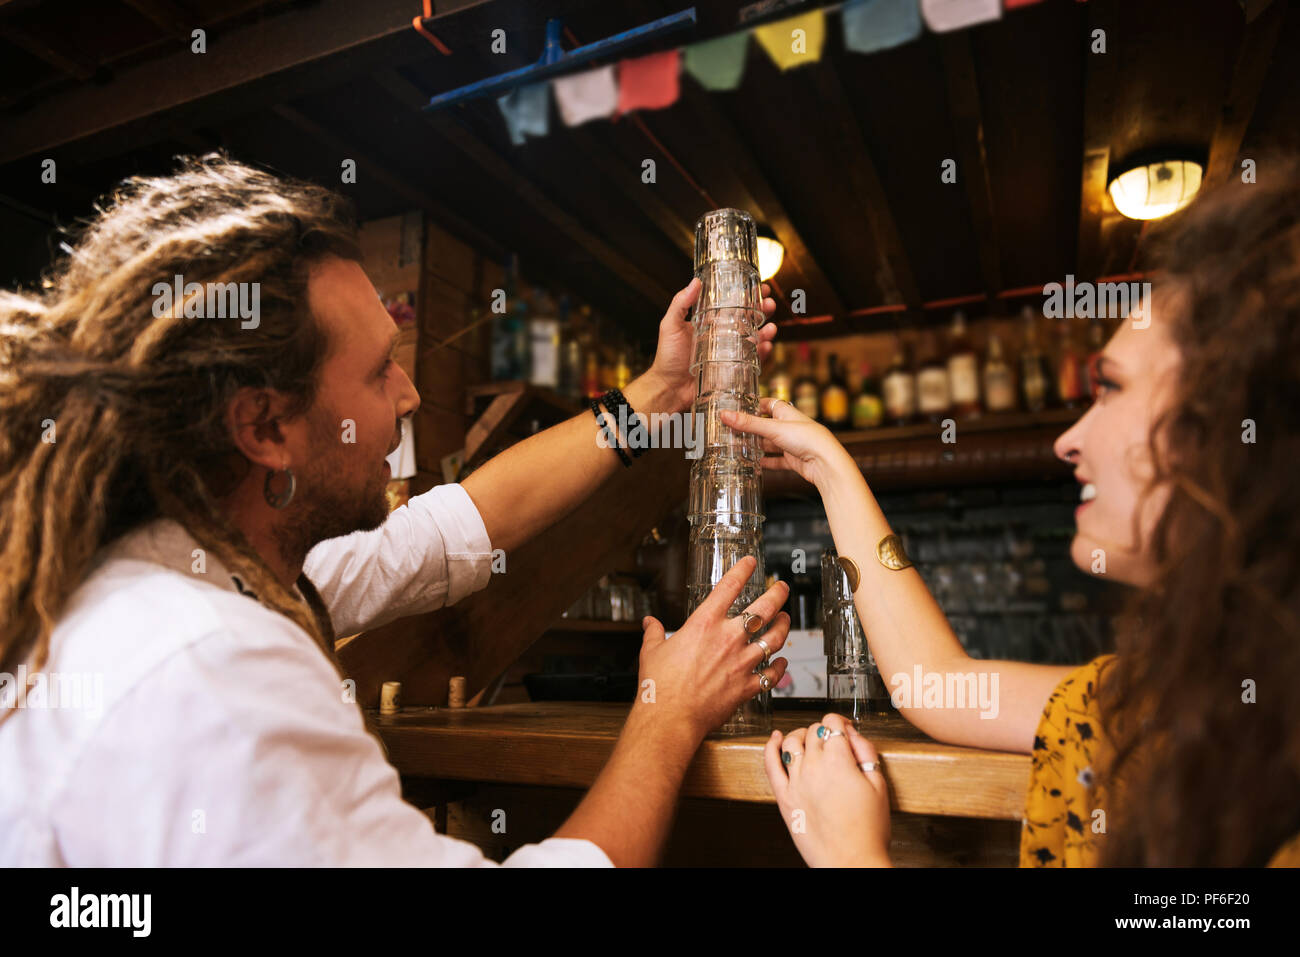 Zwei Blumenkinder sammeln Brille auf der Bar stehen Stockfoto